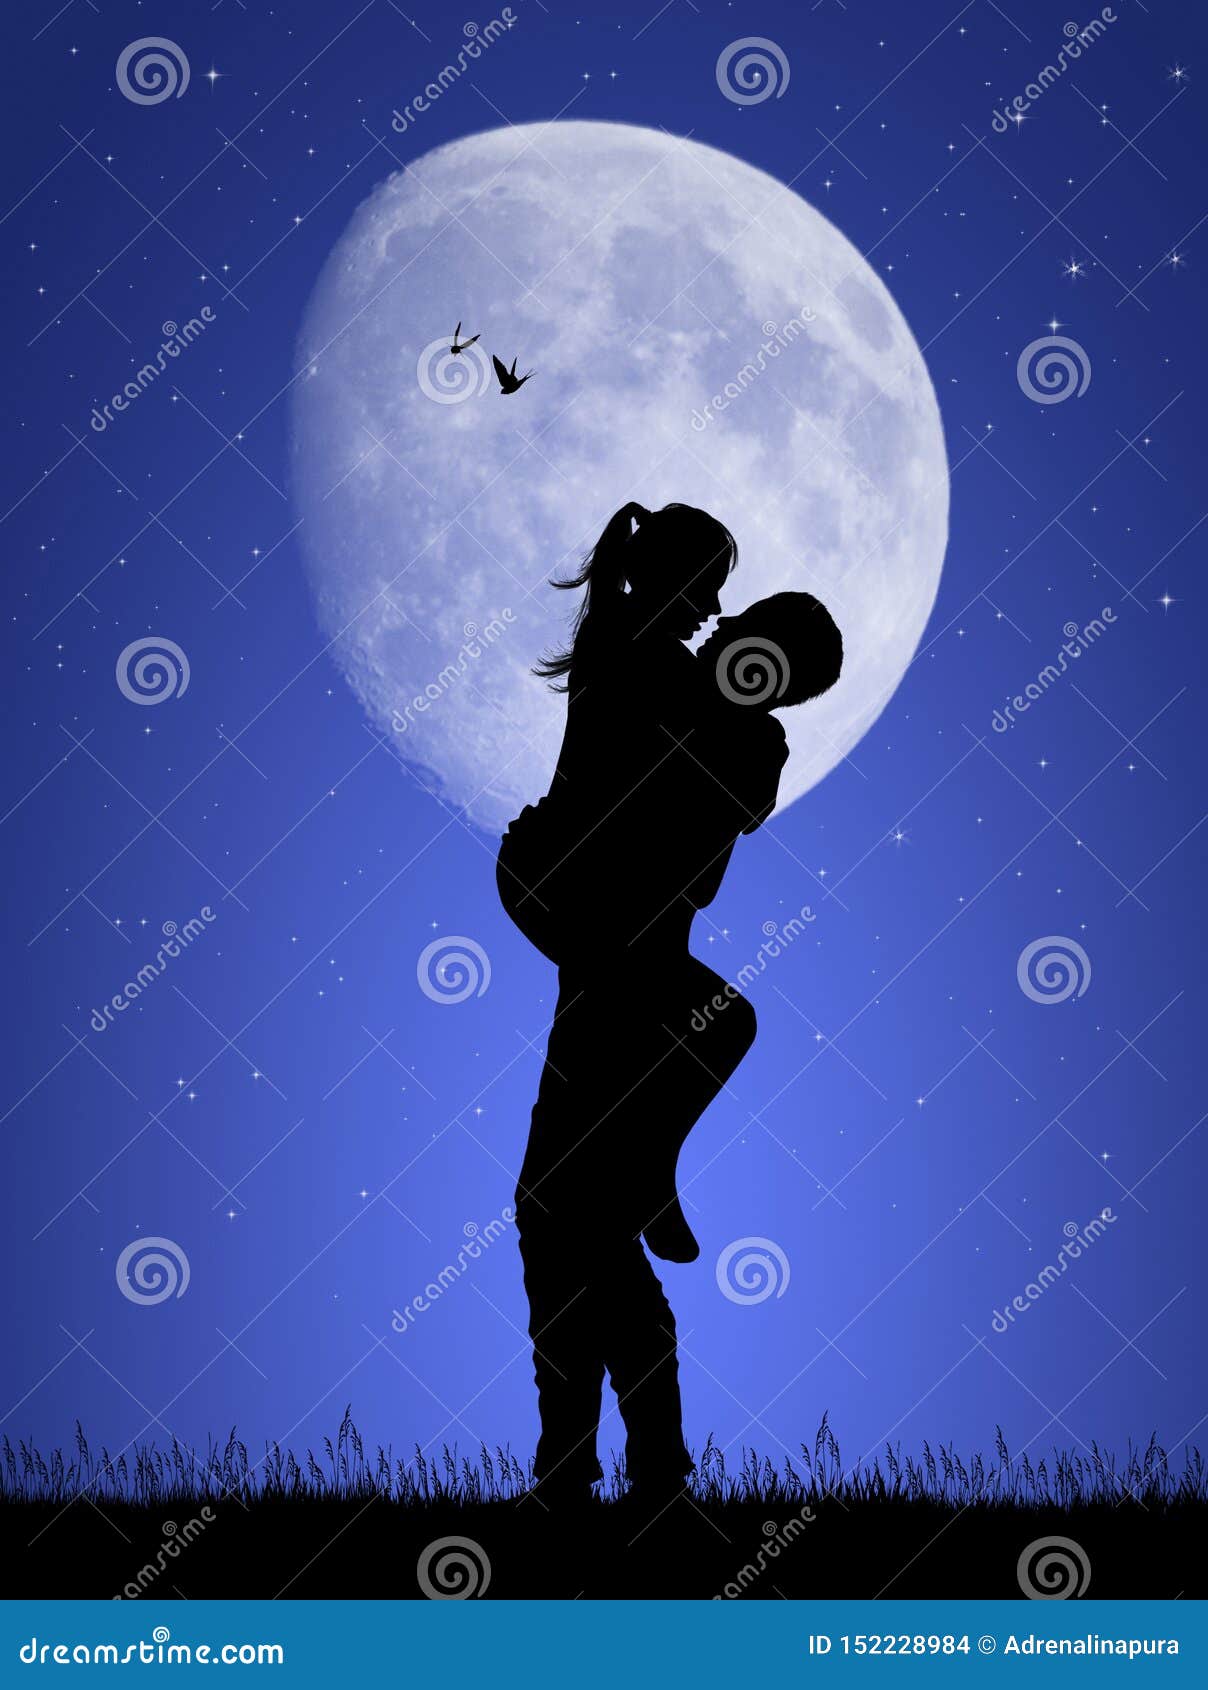 boyfriends kissing in the moonlight